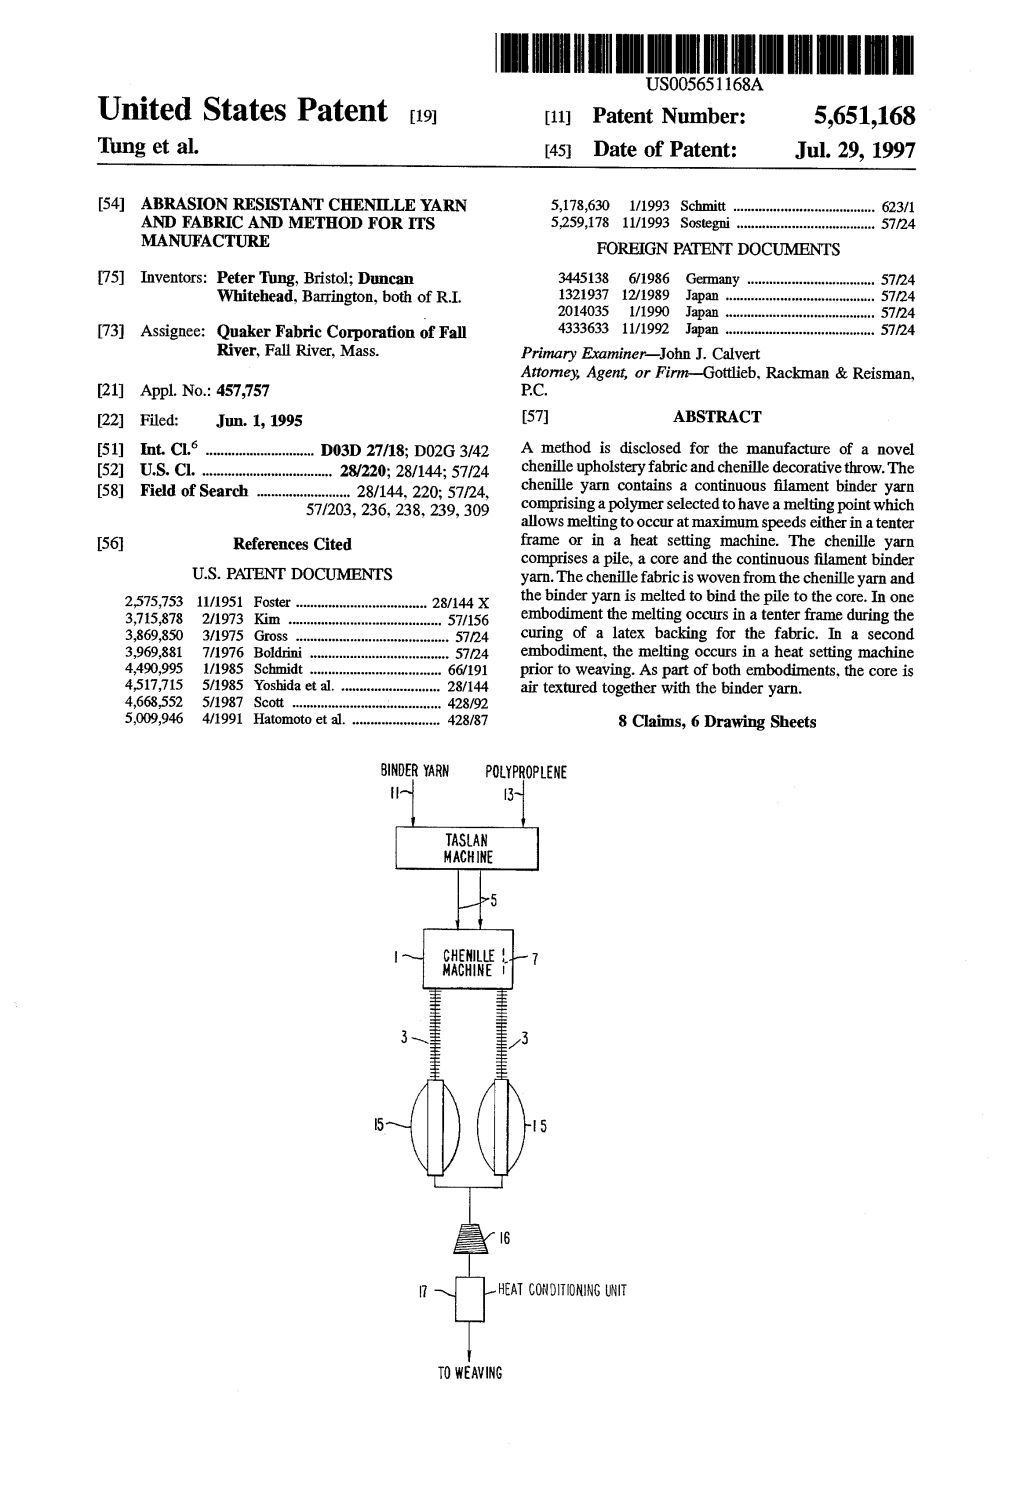 United States Patent 19 11 Patent Number: 5,651,168 Tung Et Al